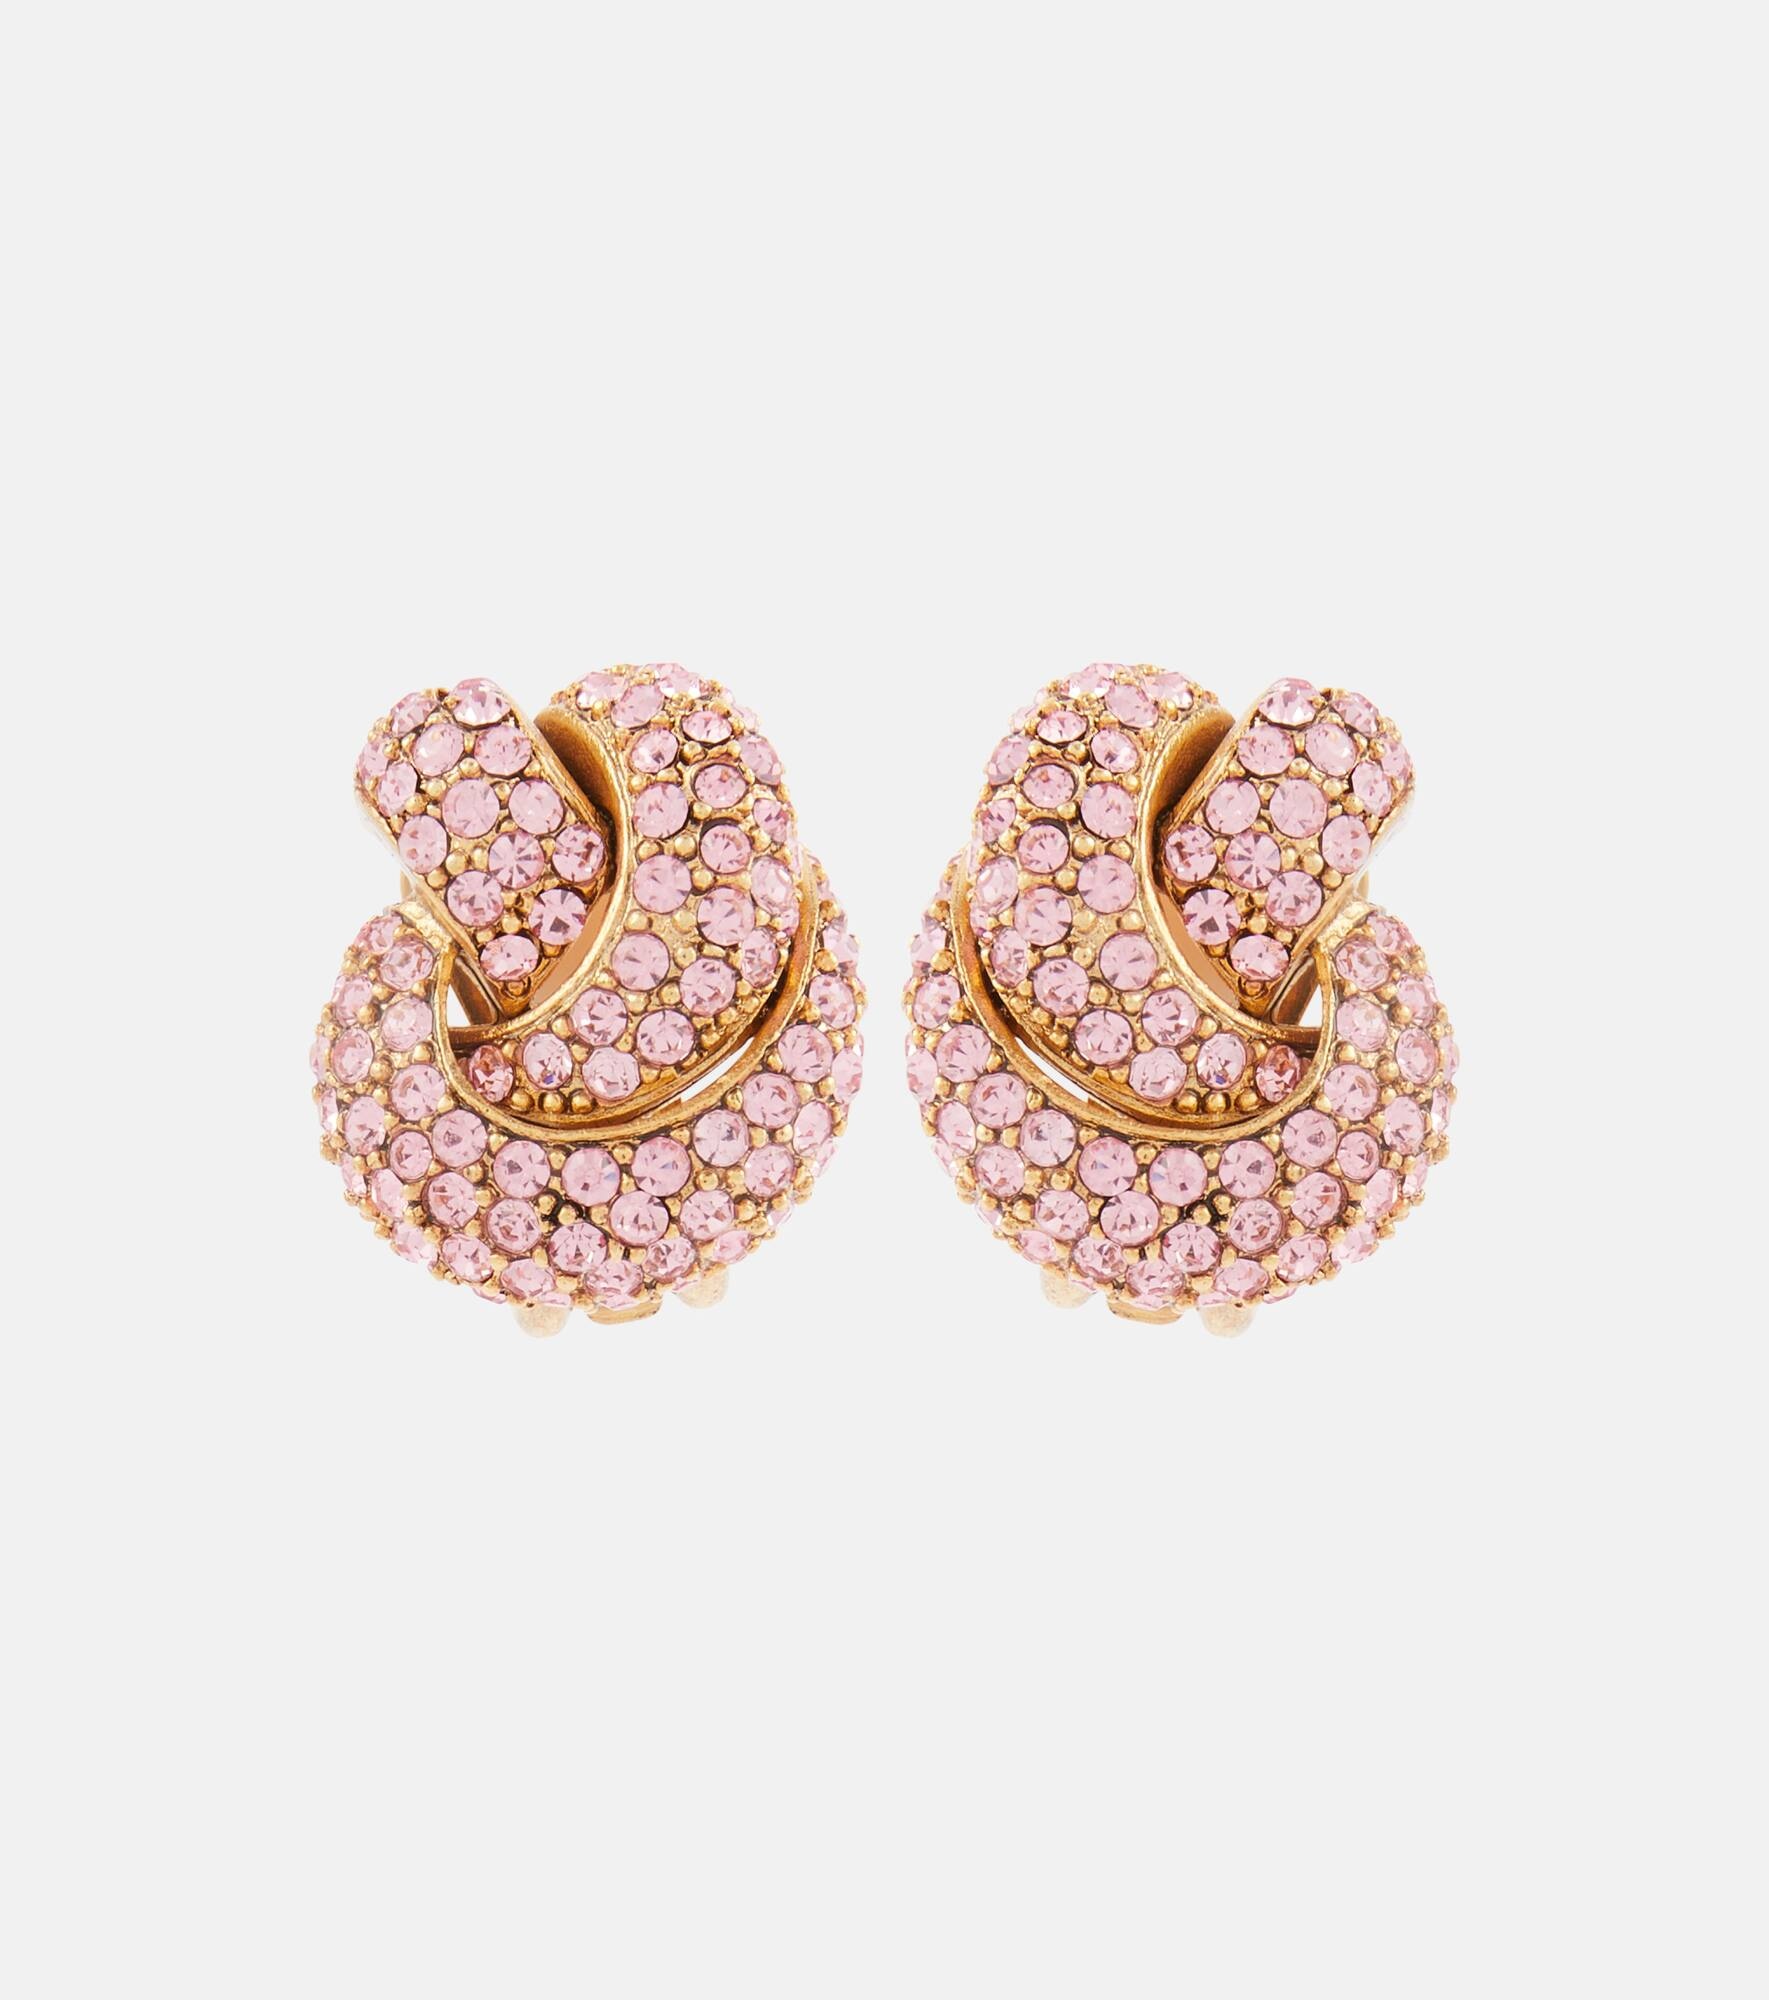 Oscar de la Renta Shell pearl clip-on earrings - Gold